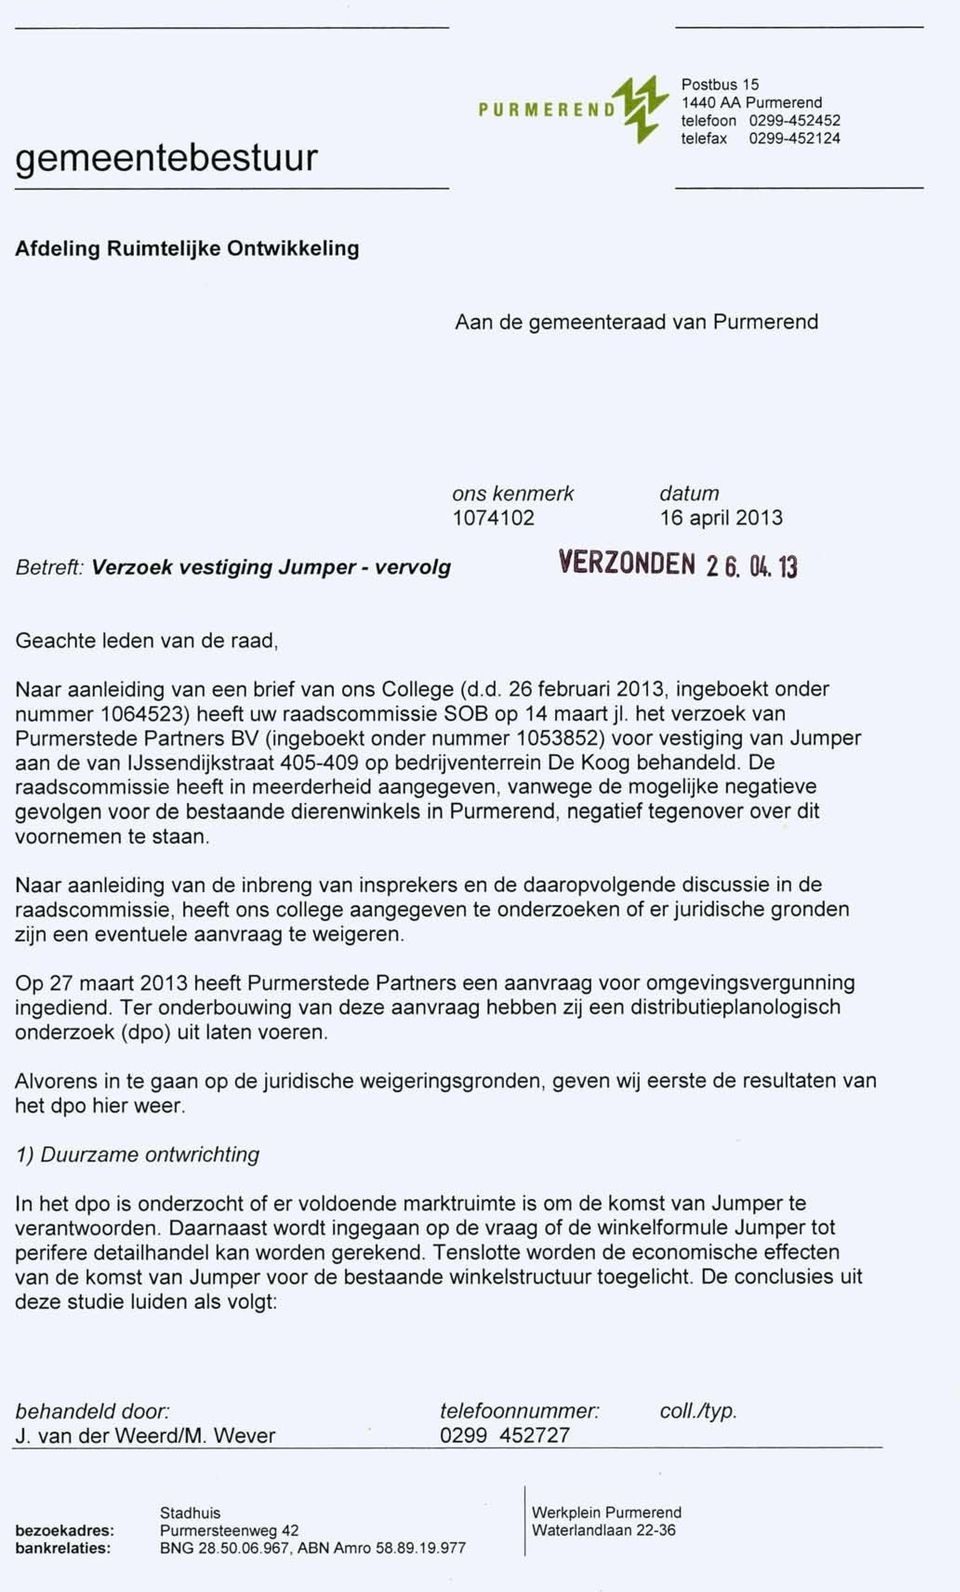 het verzoek van Purmerstede Partners BV (ingeboekt onder nummer 1053852) voor vestiging van Jumper aan de van IJssendijkstraat 405-409 op bedrijventerrein De Koog behandeld.